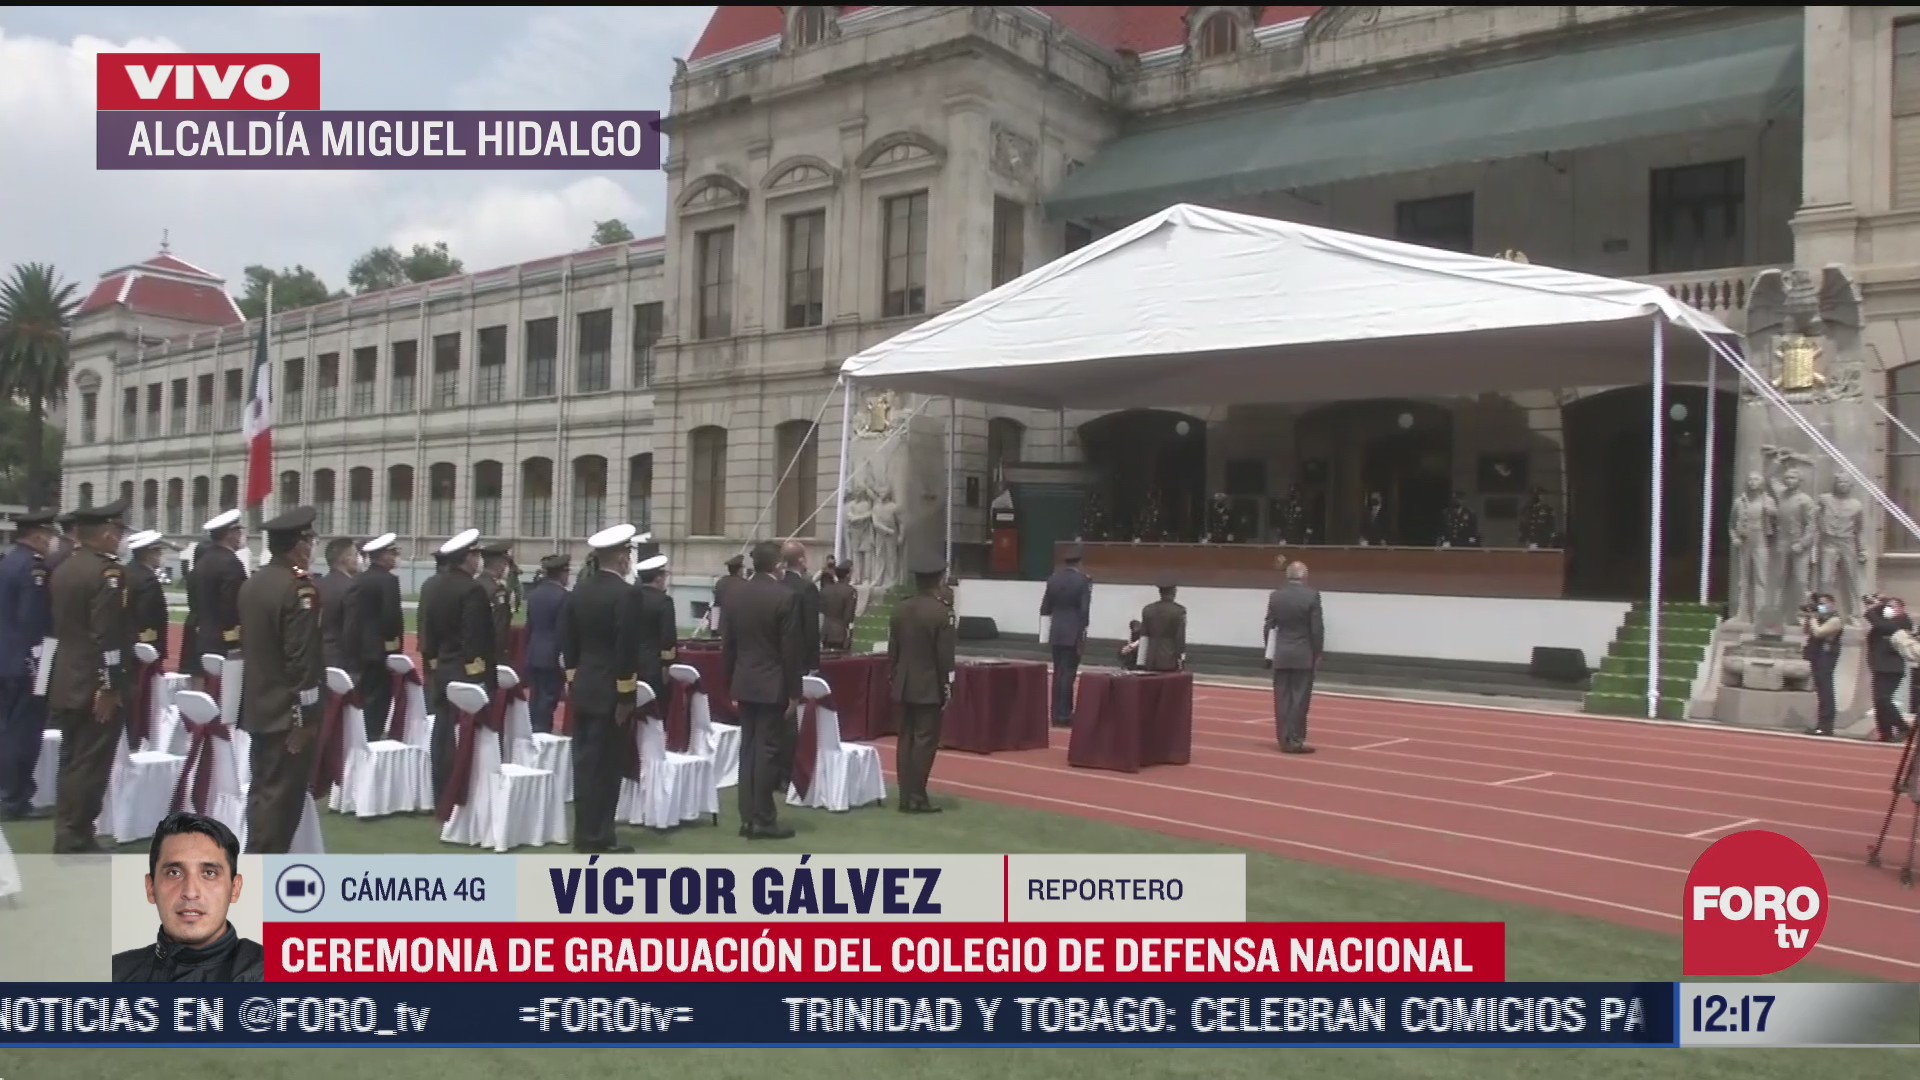 ceremonia de graduacion del colegio de defensa nacional